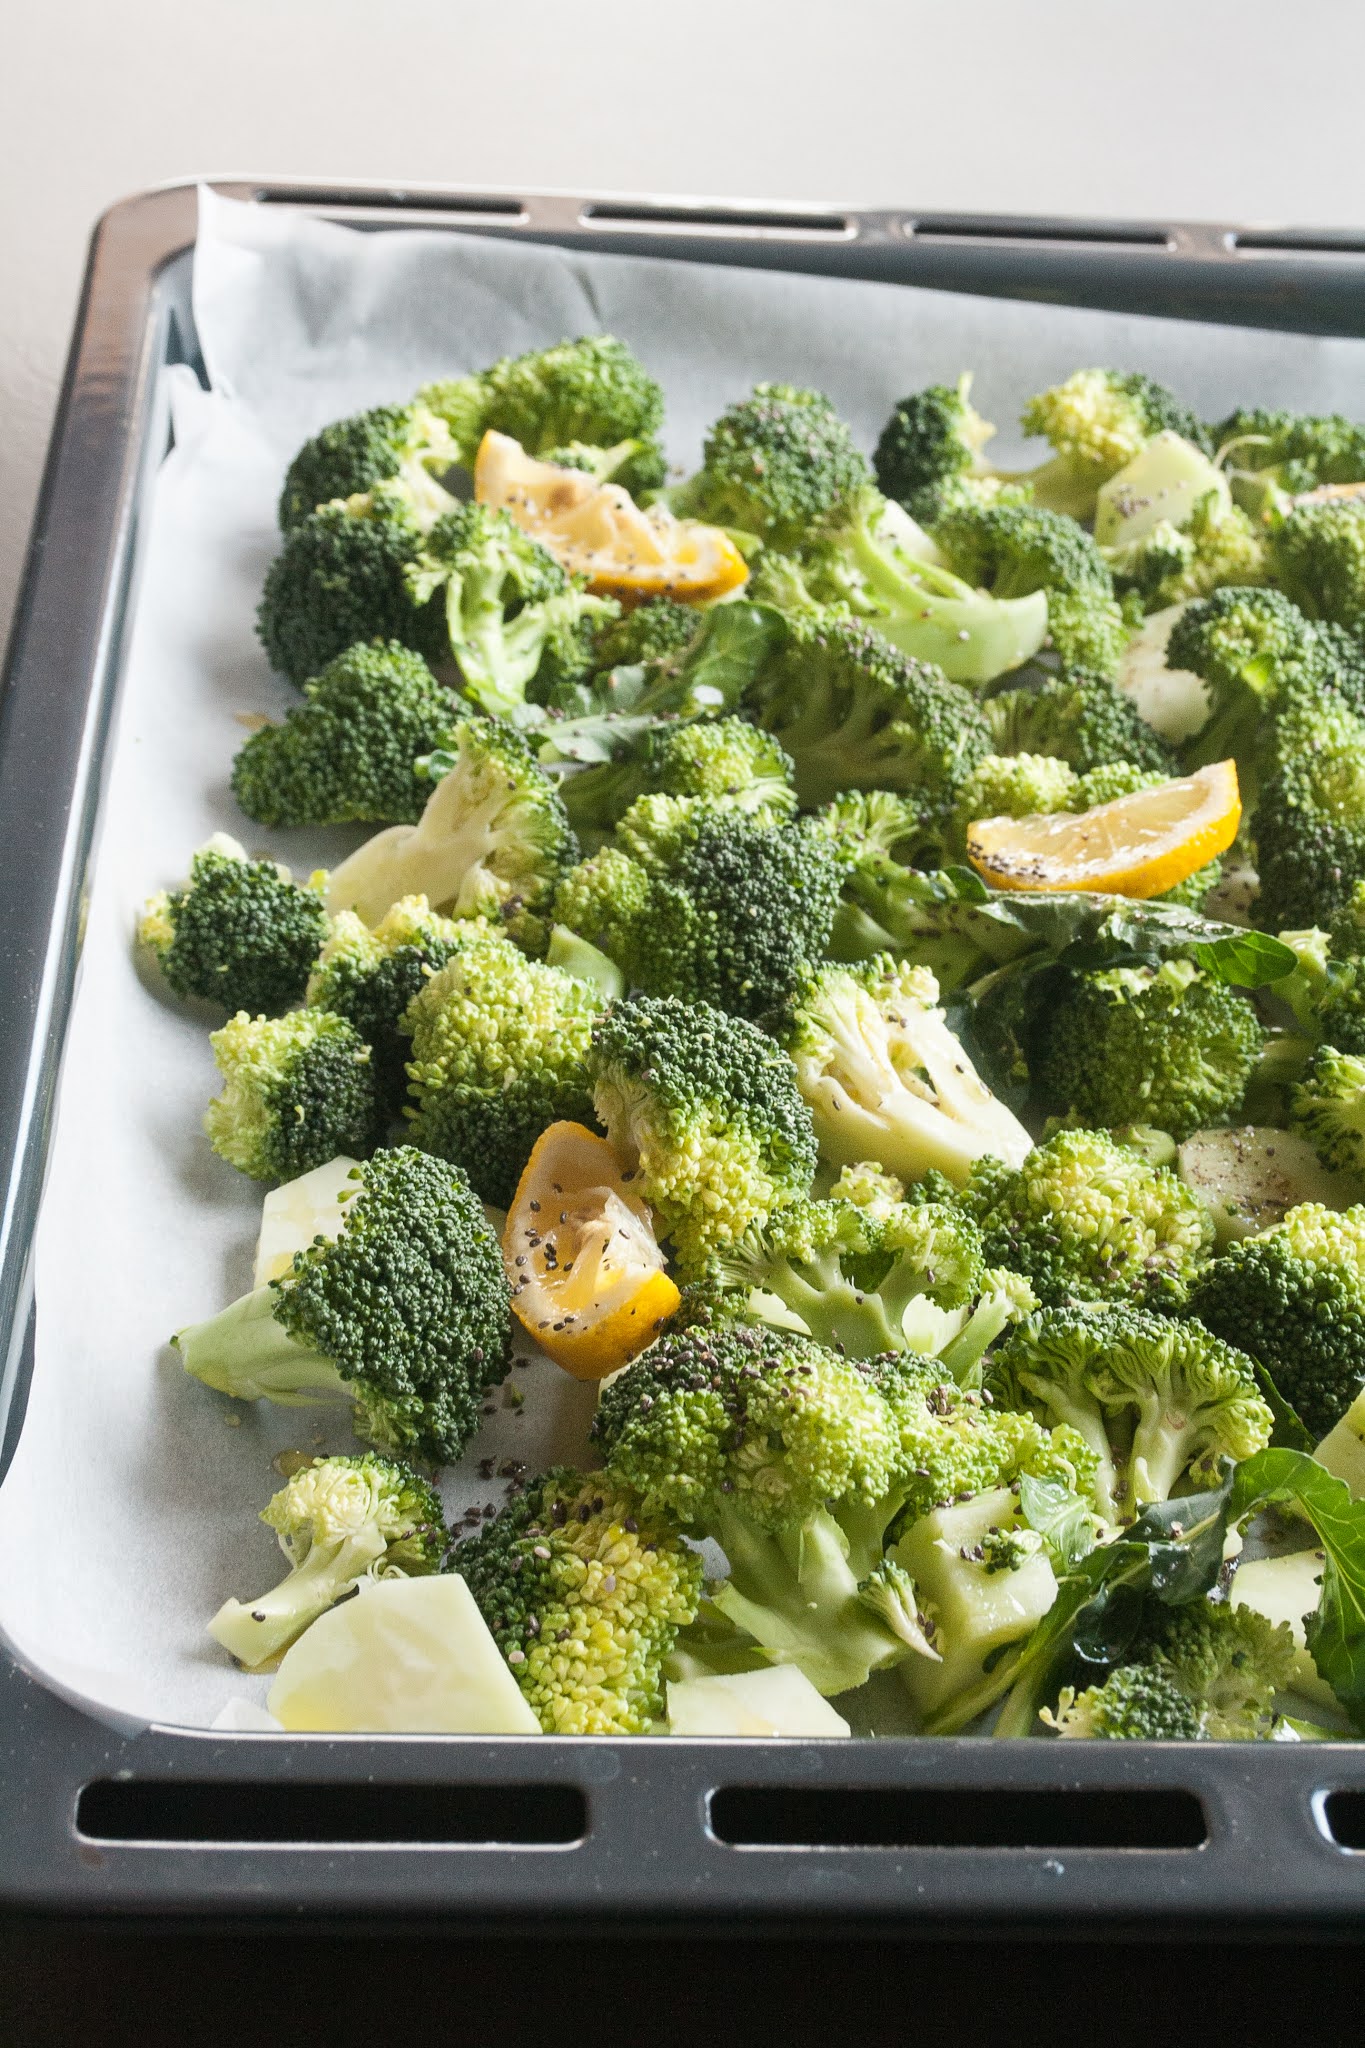 Broccoli al forno, la ricetta per un contorno super healthy - Breakfast ...